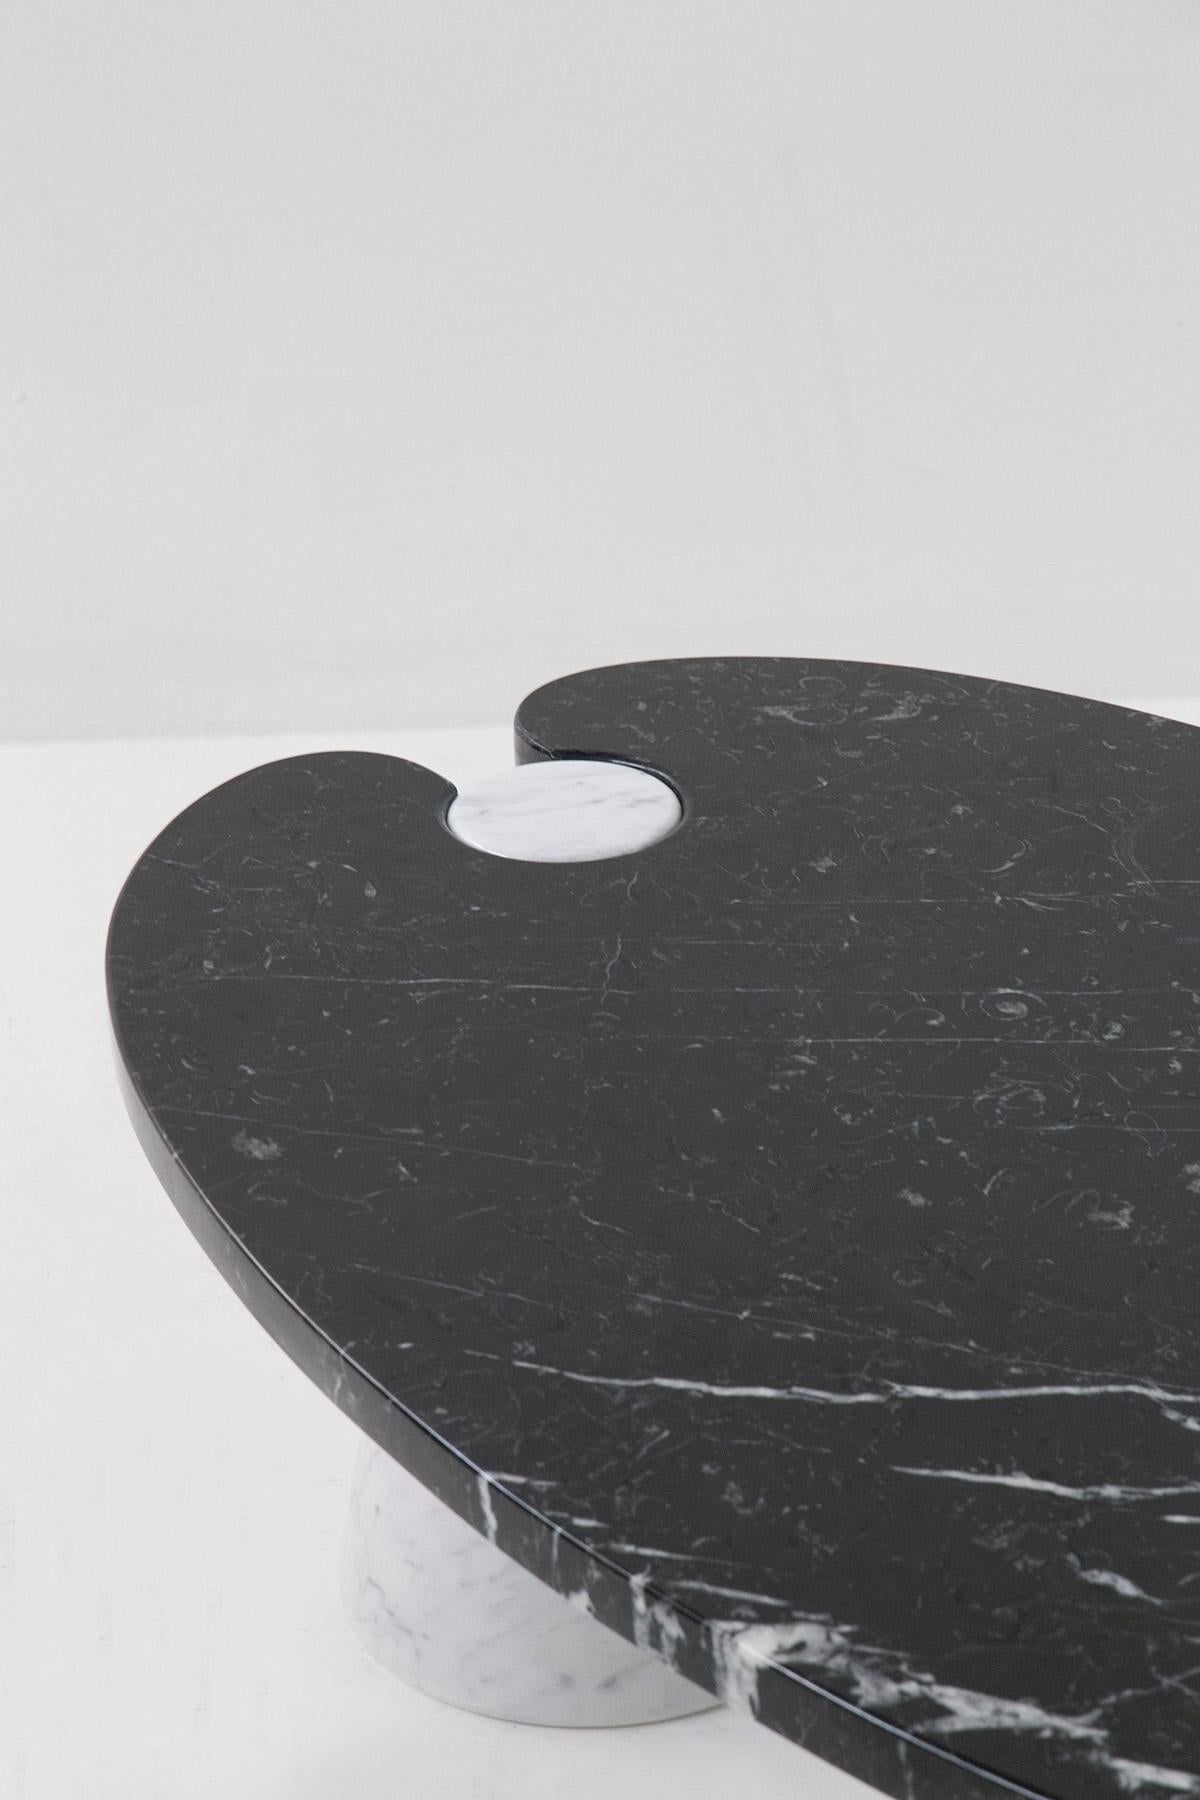 Ovaler Couchtisch von Angelo Mangiarotti aus den 1970er Jahren mit original Skipper Label aus schwarzem und weißem Marmor. Der Couchtisch wurde aus zwei verschiedenen Marmorsorten entworfen und hergestellt. Für die beiden konischen Sockel wird ein